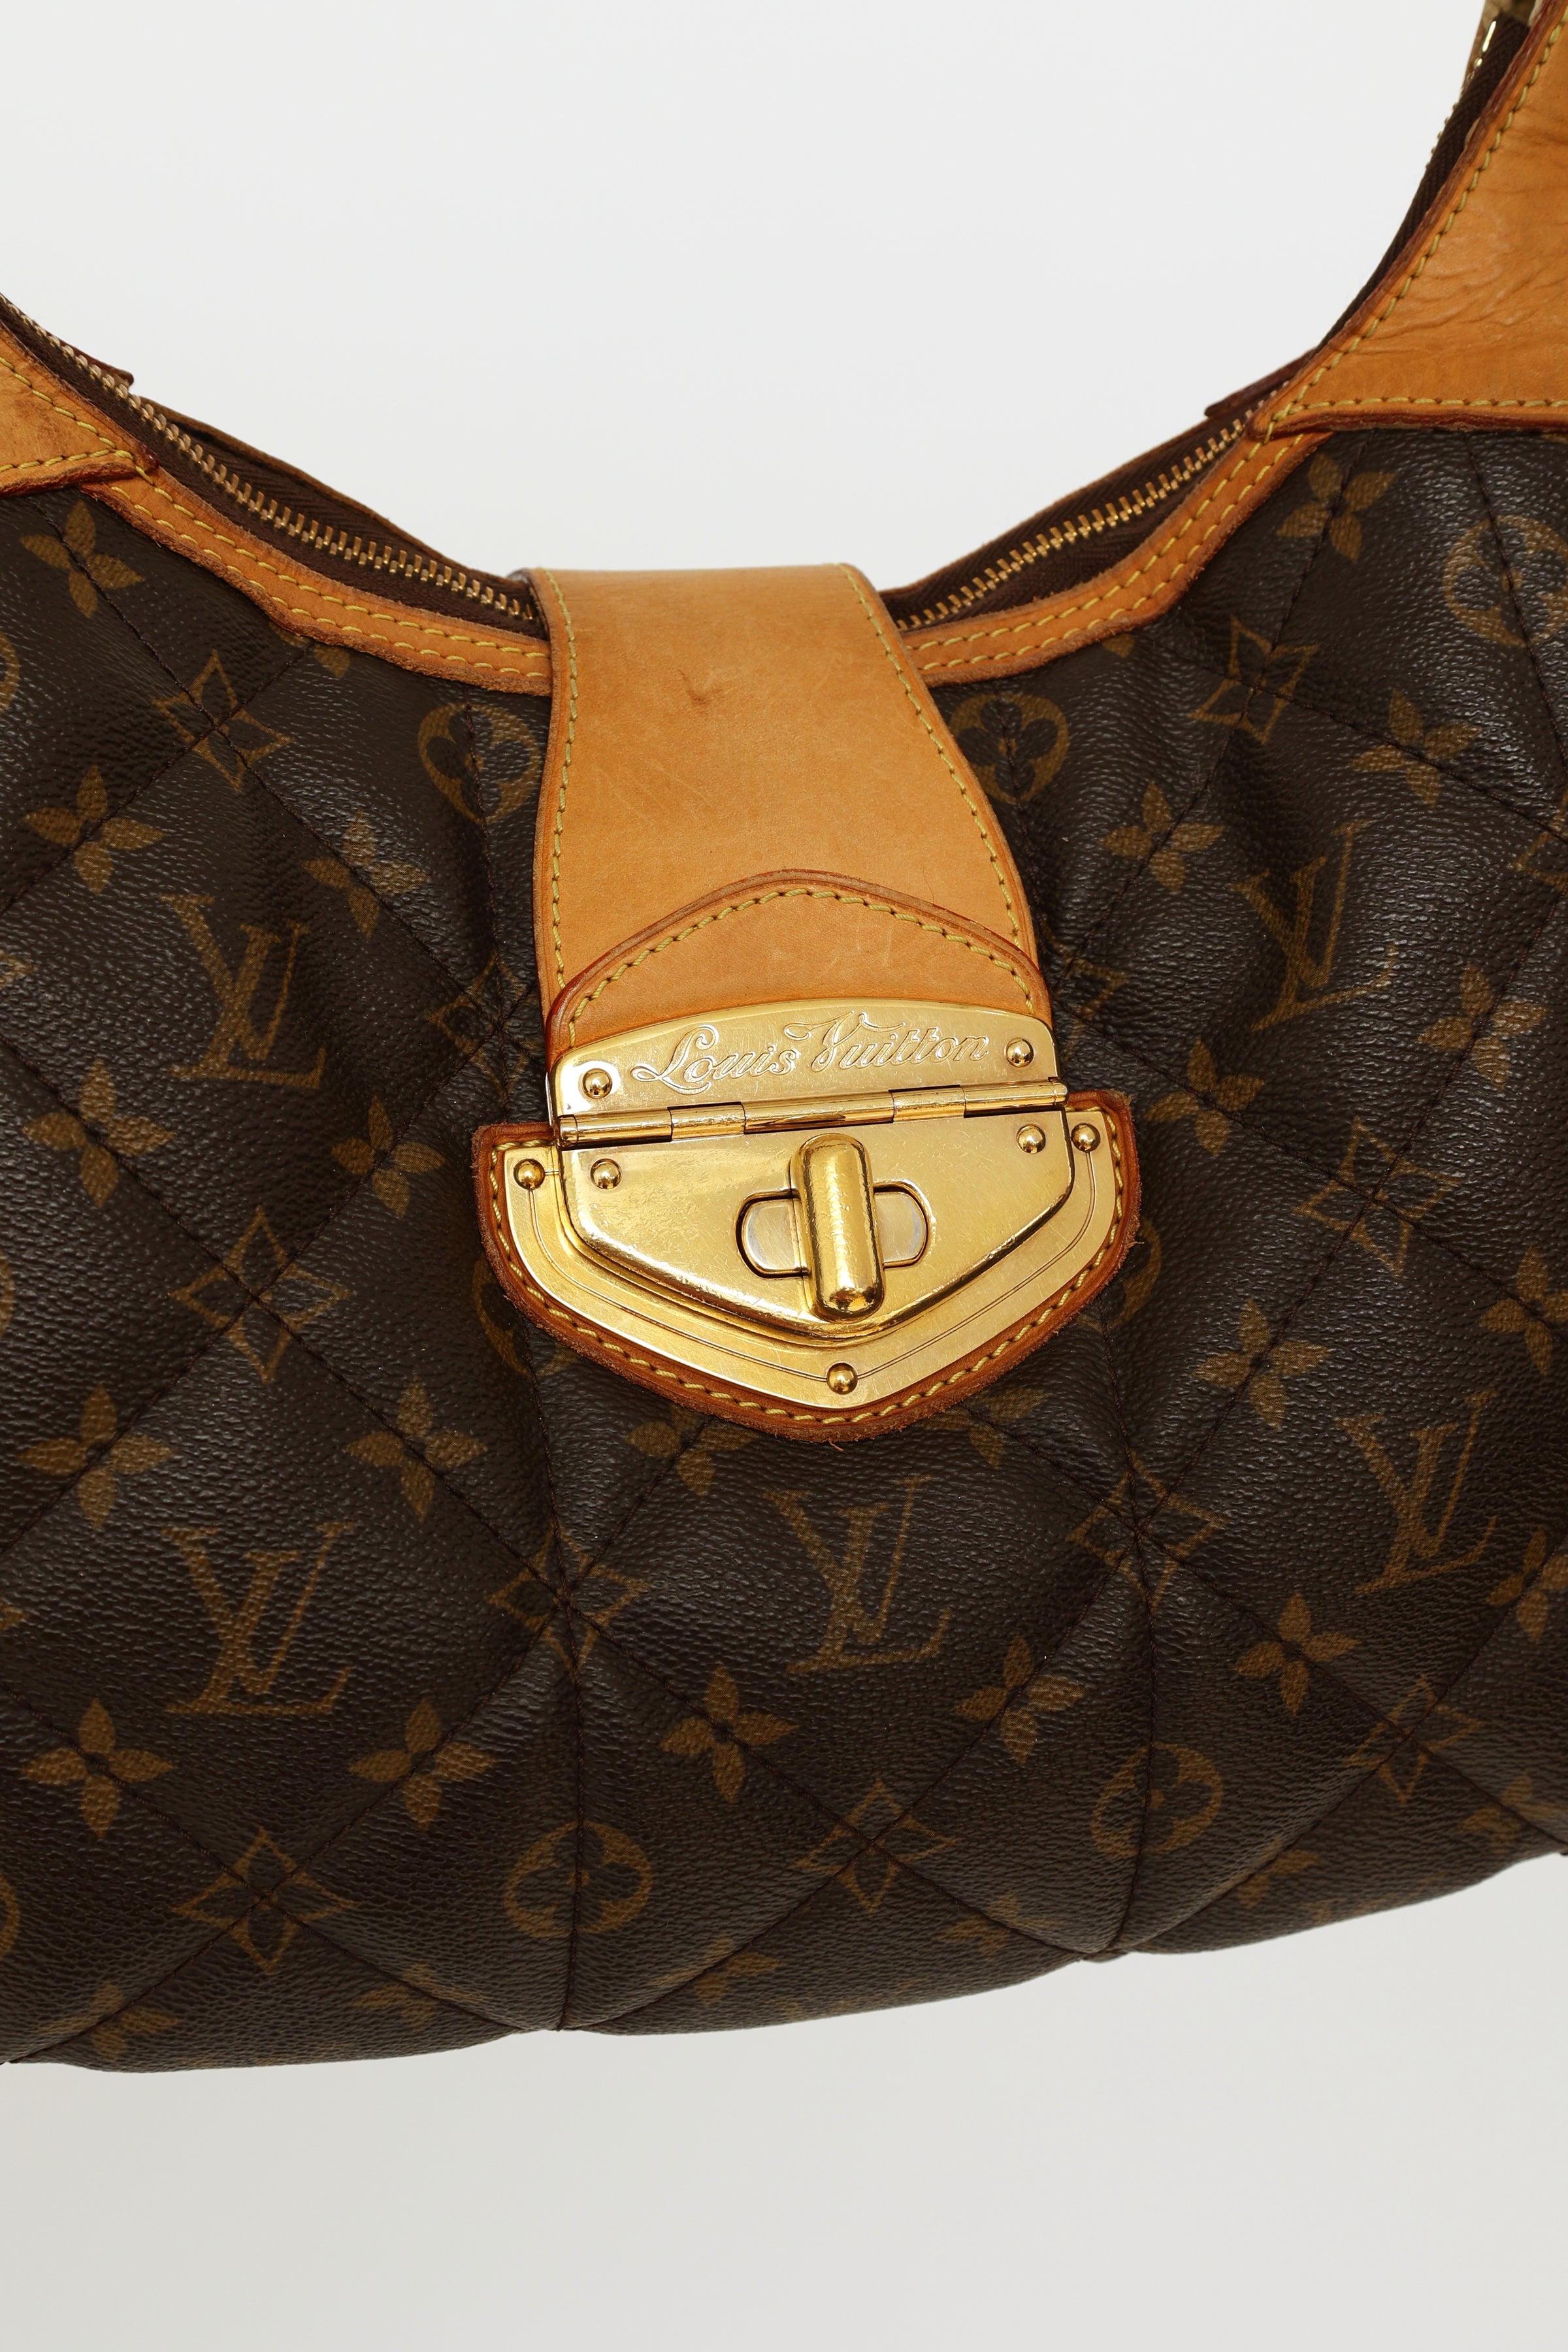 Louis Vuitton M41453 Etoile City Pm Monogram Coated Canvas Bag